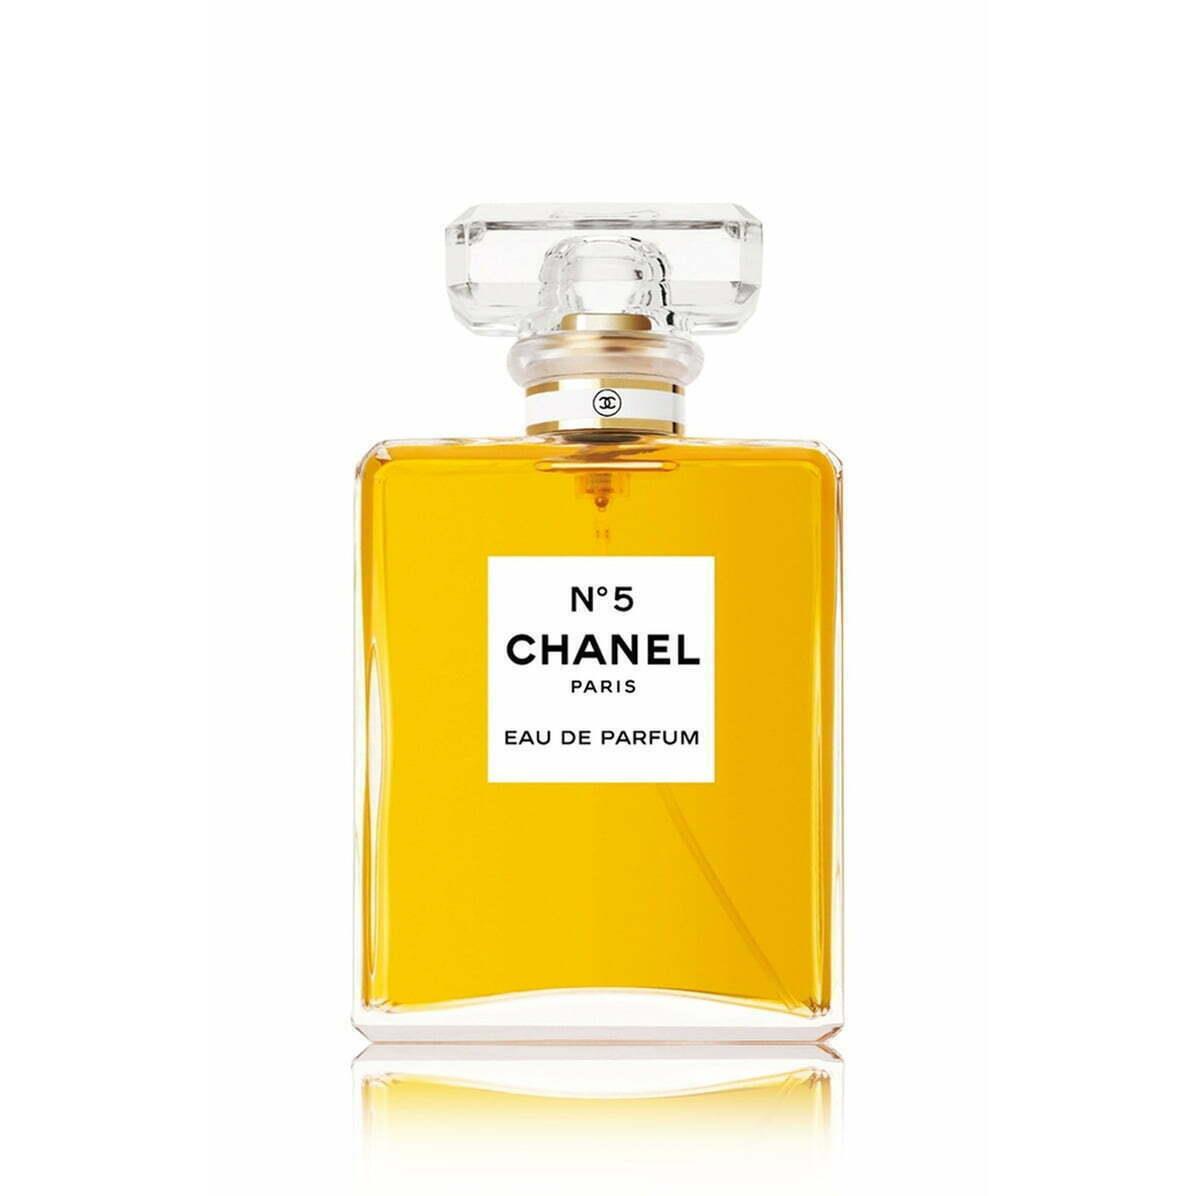 Chanel N 5 Eau De Perfum Edp Spray Size 100 ml / 3.4 fl oz